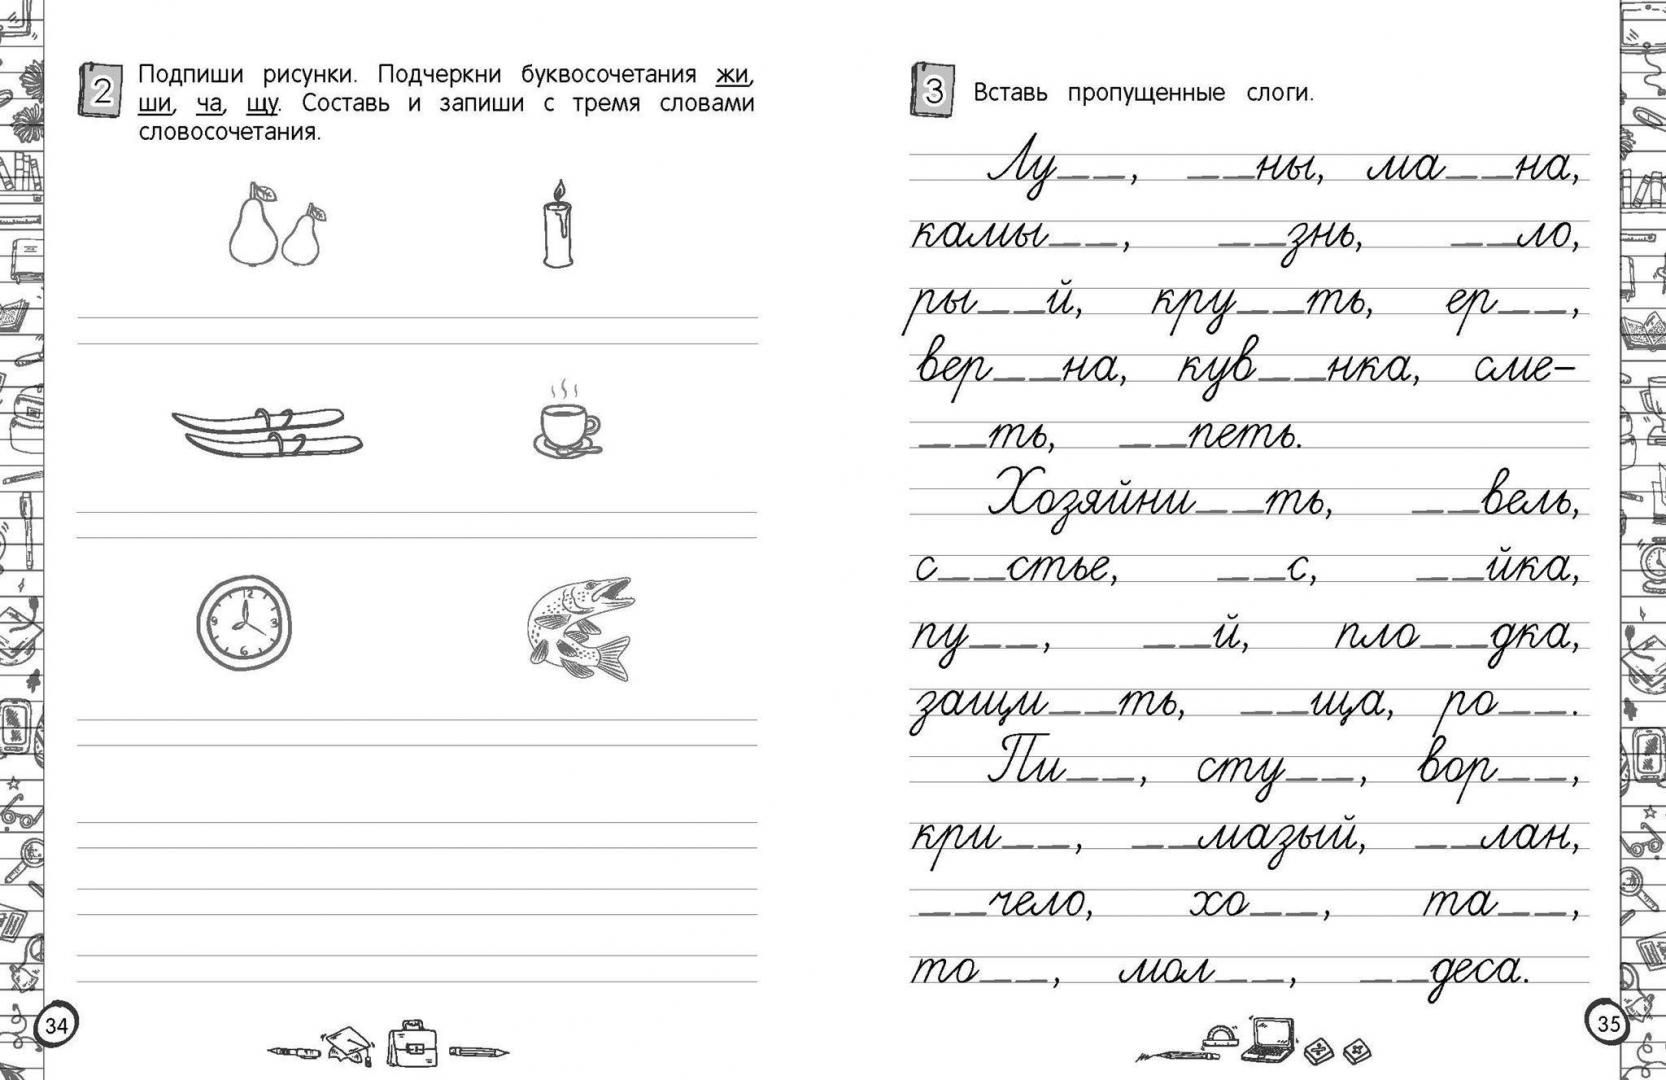 3 класс русский язык задания на карточках